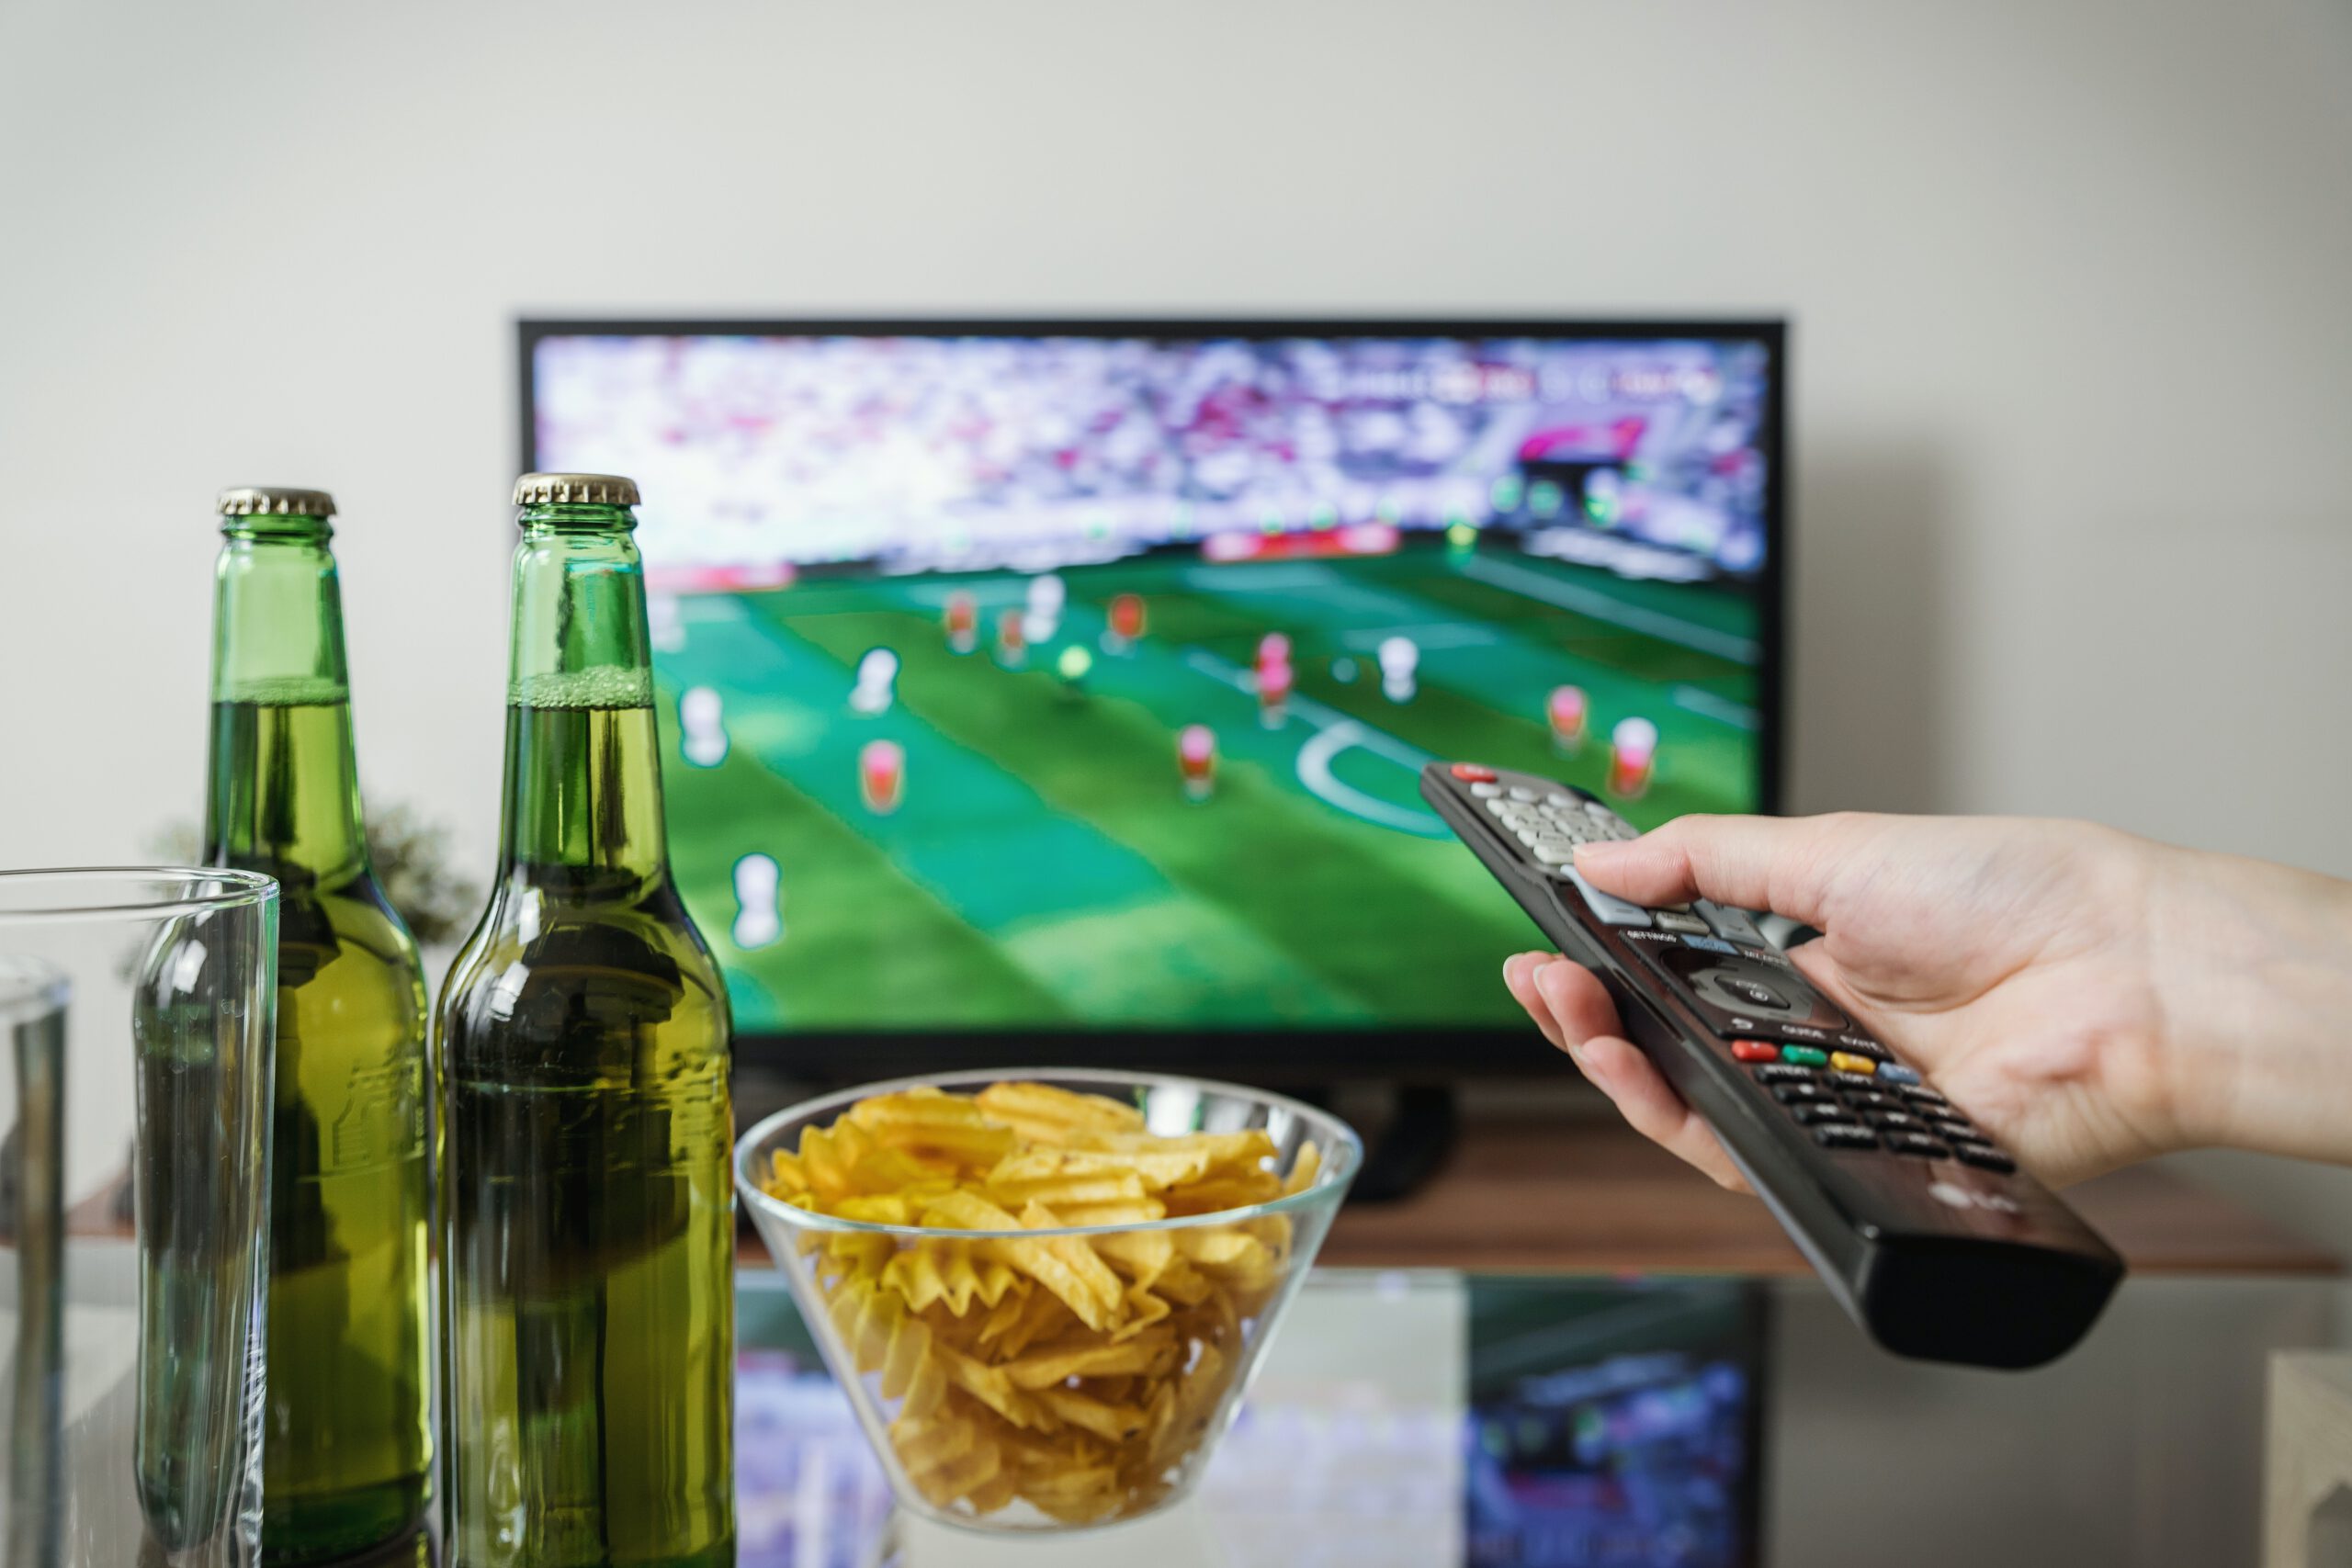 Mężczyzna z pilotem w ręce i piwem oraz chipsami na stoliku oglądający mecz w telewizji